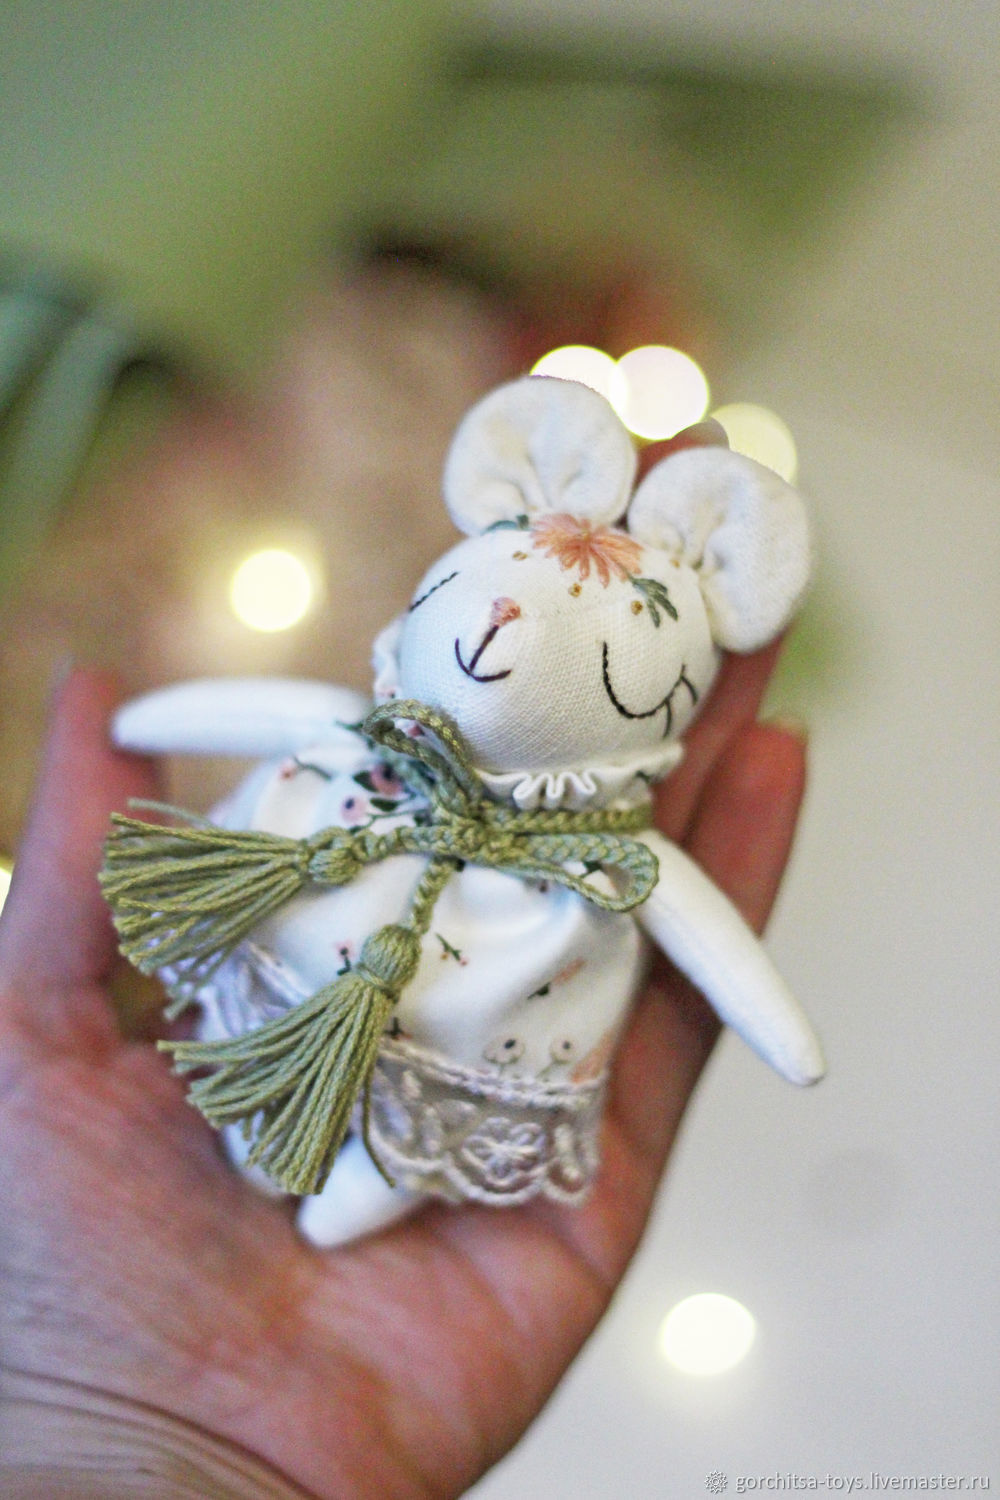  Мышонок девочка в платье белом цветочный принт, Мягкие игрушки, Орел,  Фото №1